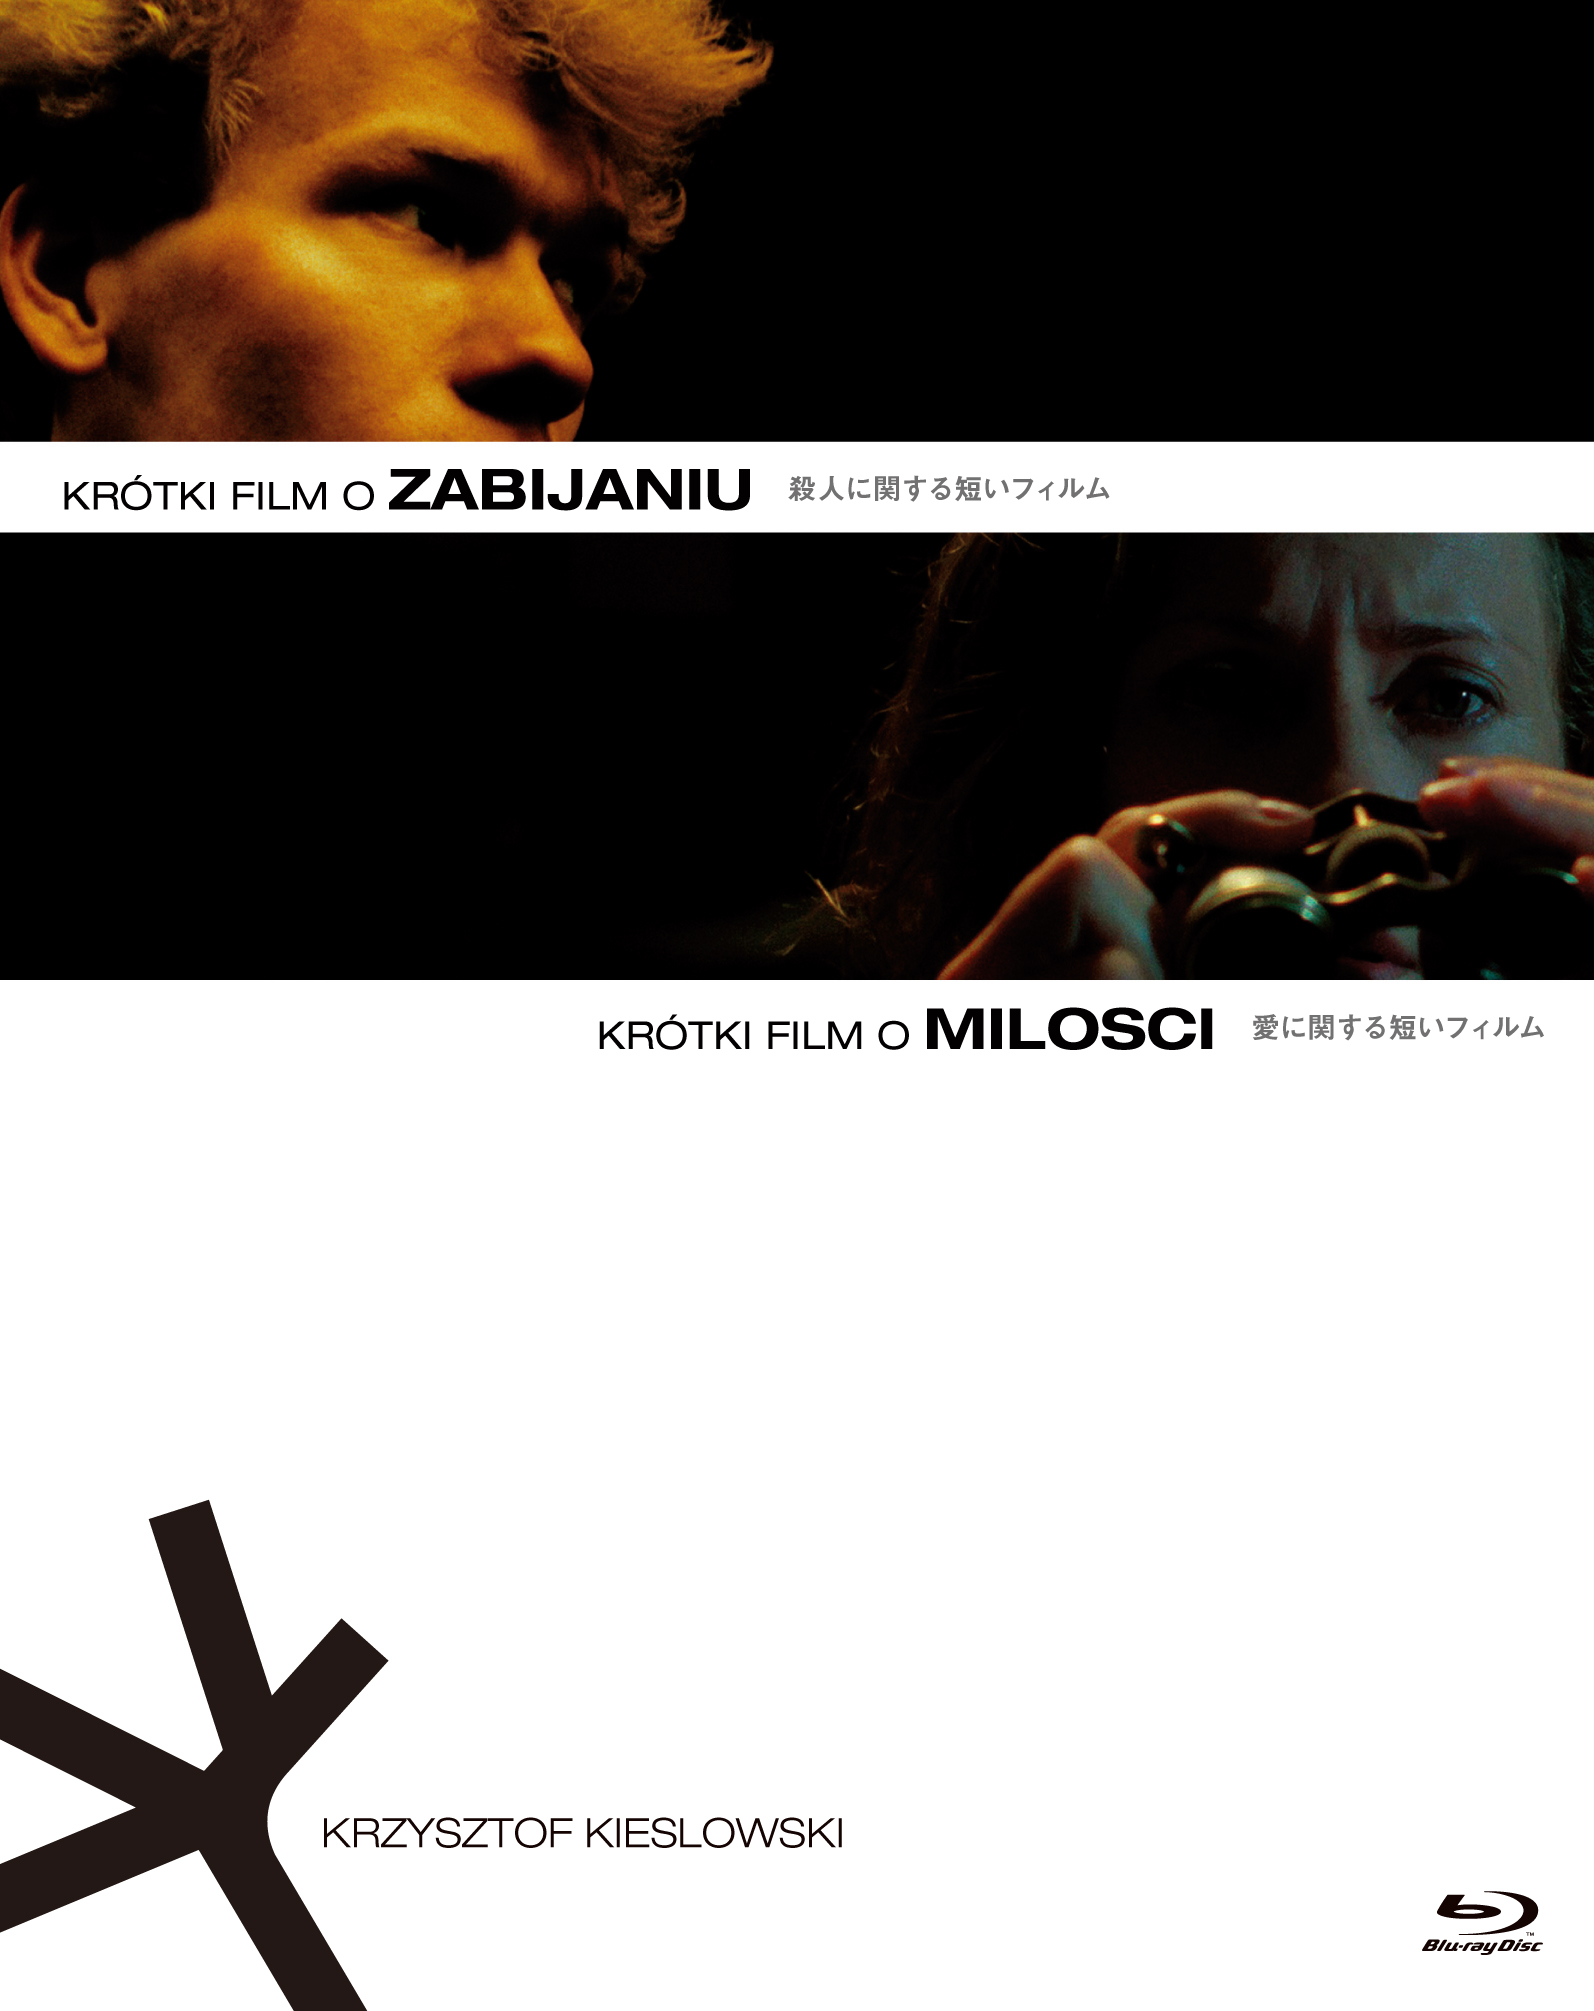 クシシュトフ・キェシロフスキ『殺人に関する短いフィルム』『愛に関する短いフィルム』